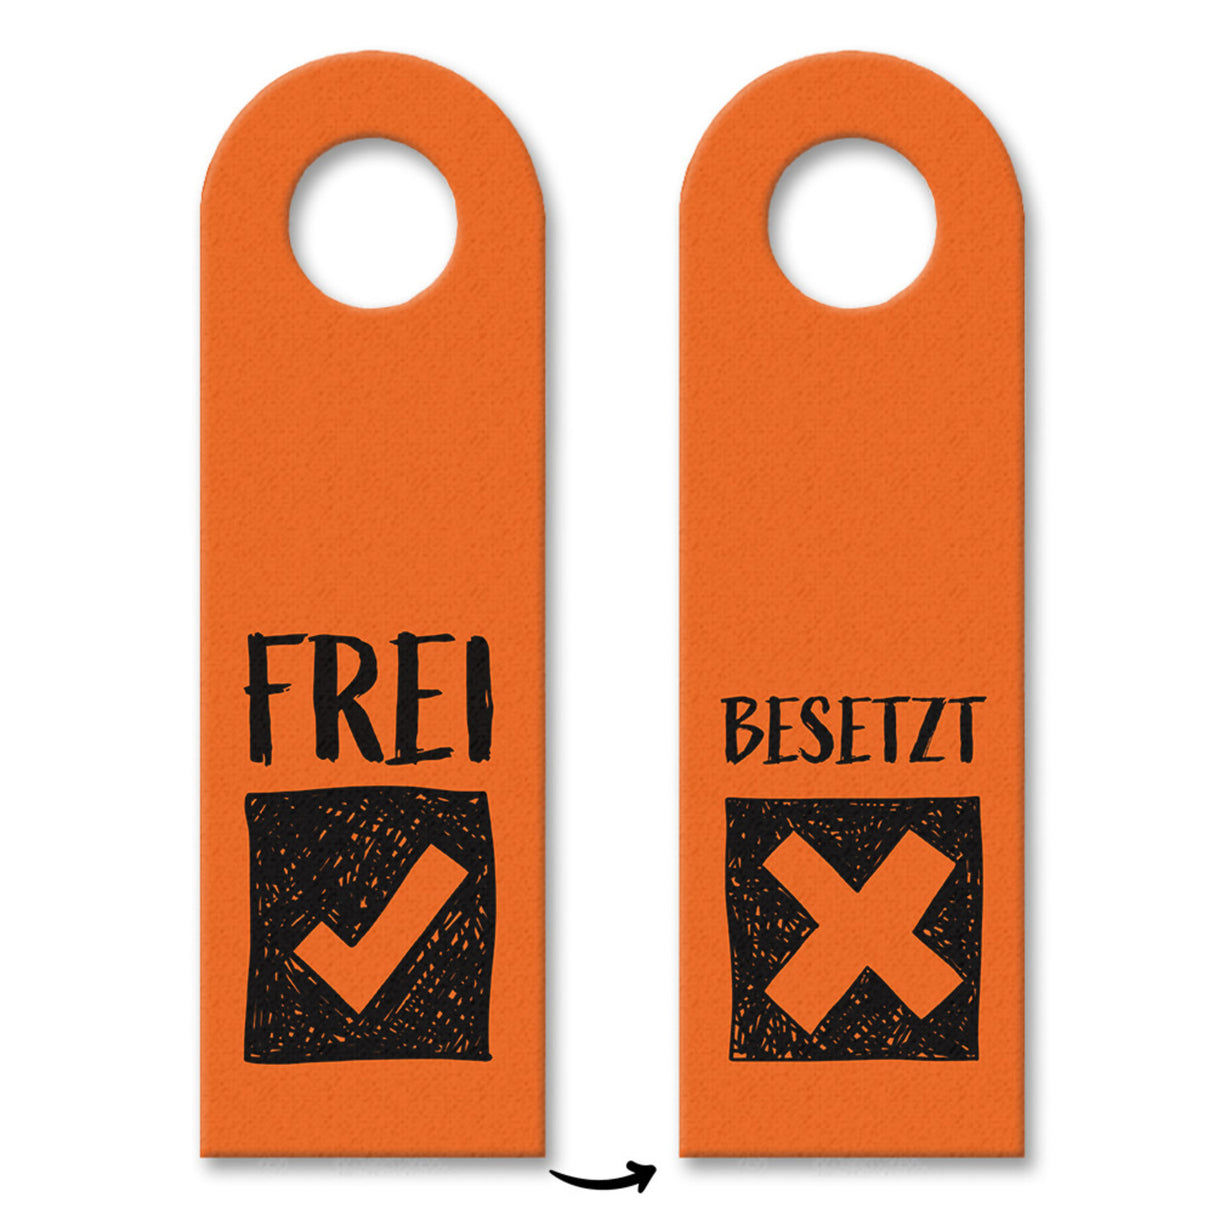 Besetzt oder Frei Türhänger in Orange mit Symbolen für die Toilettentür